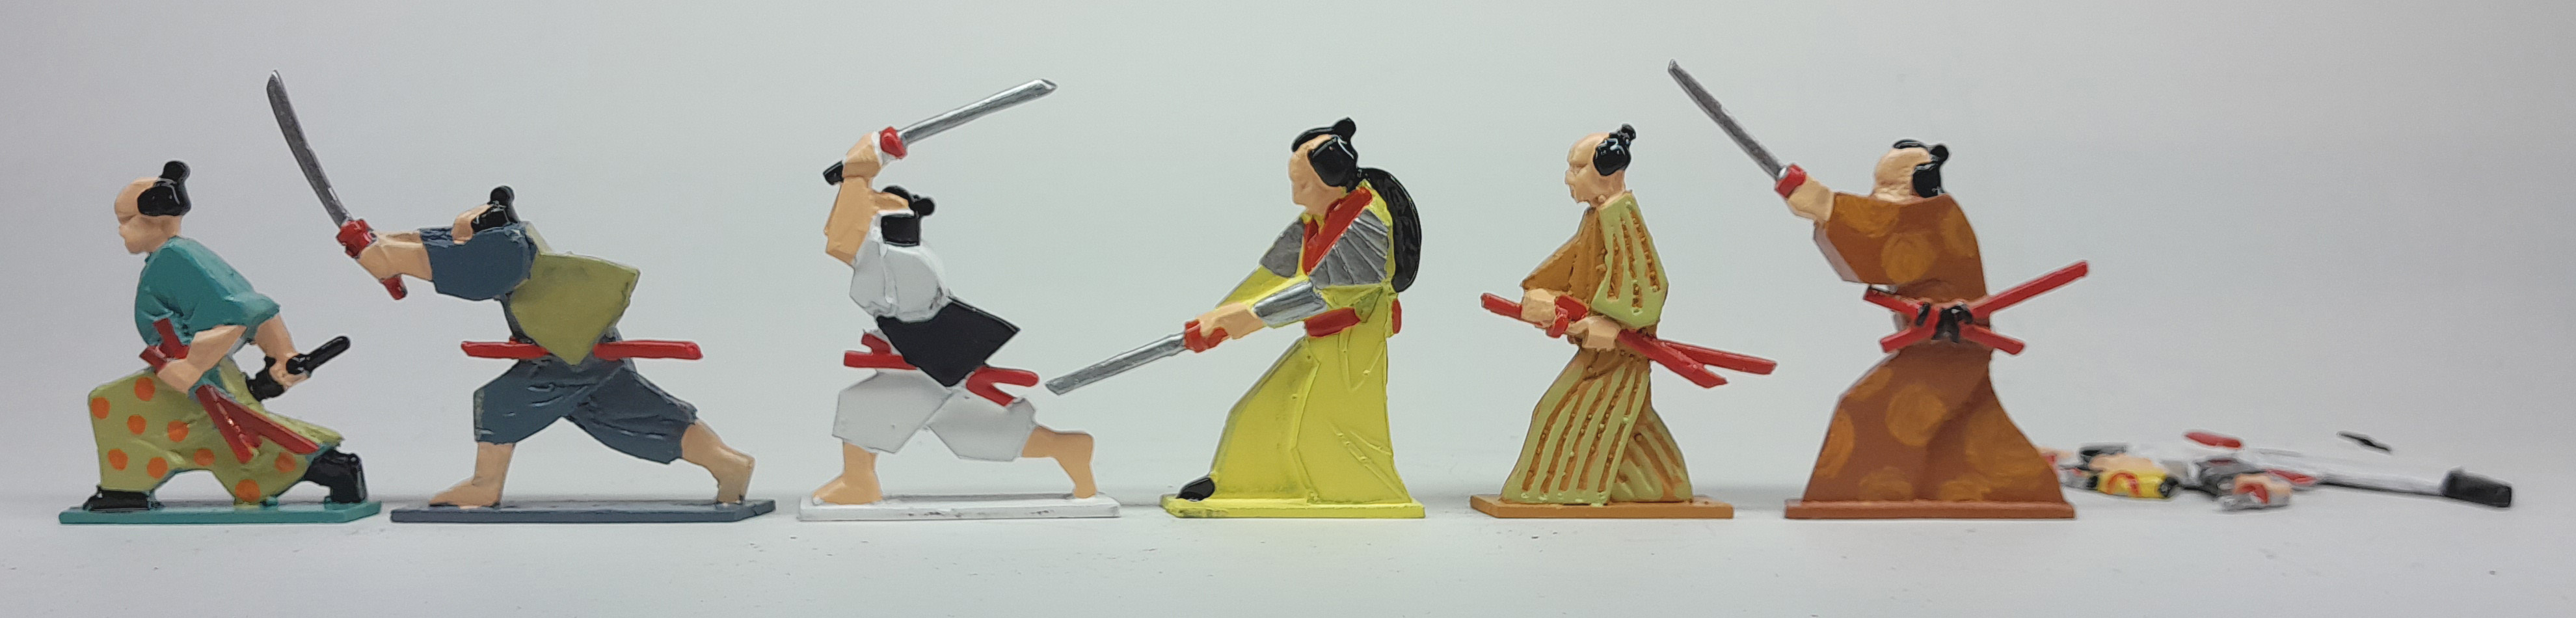 Набор №002C
Еще семь самураев